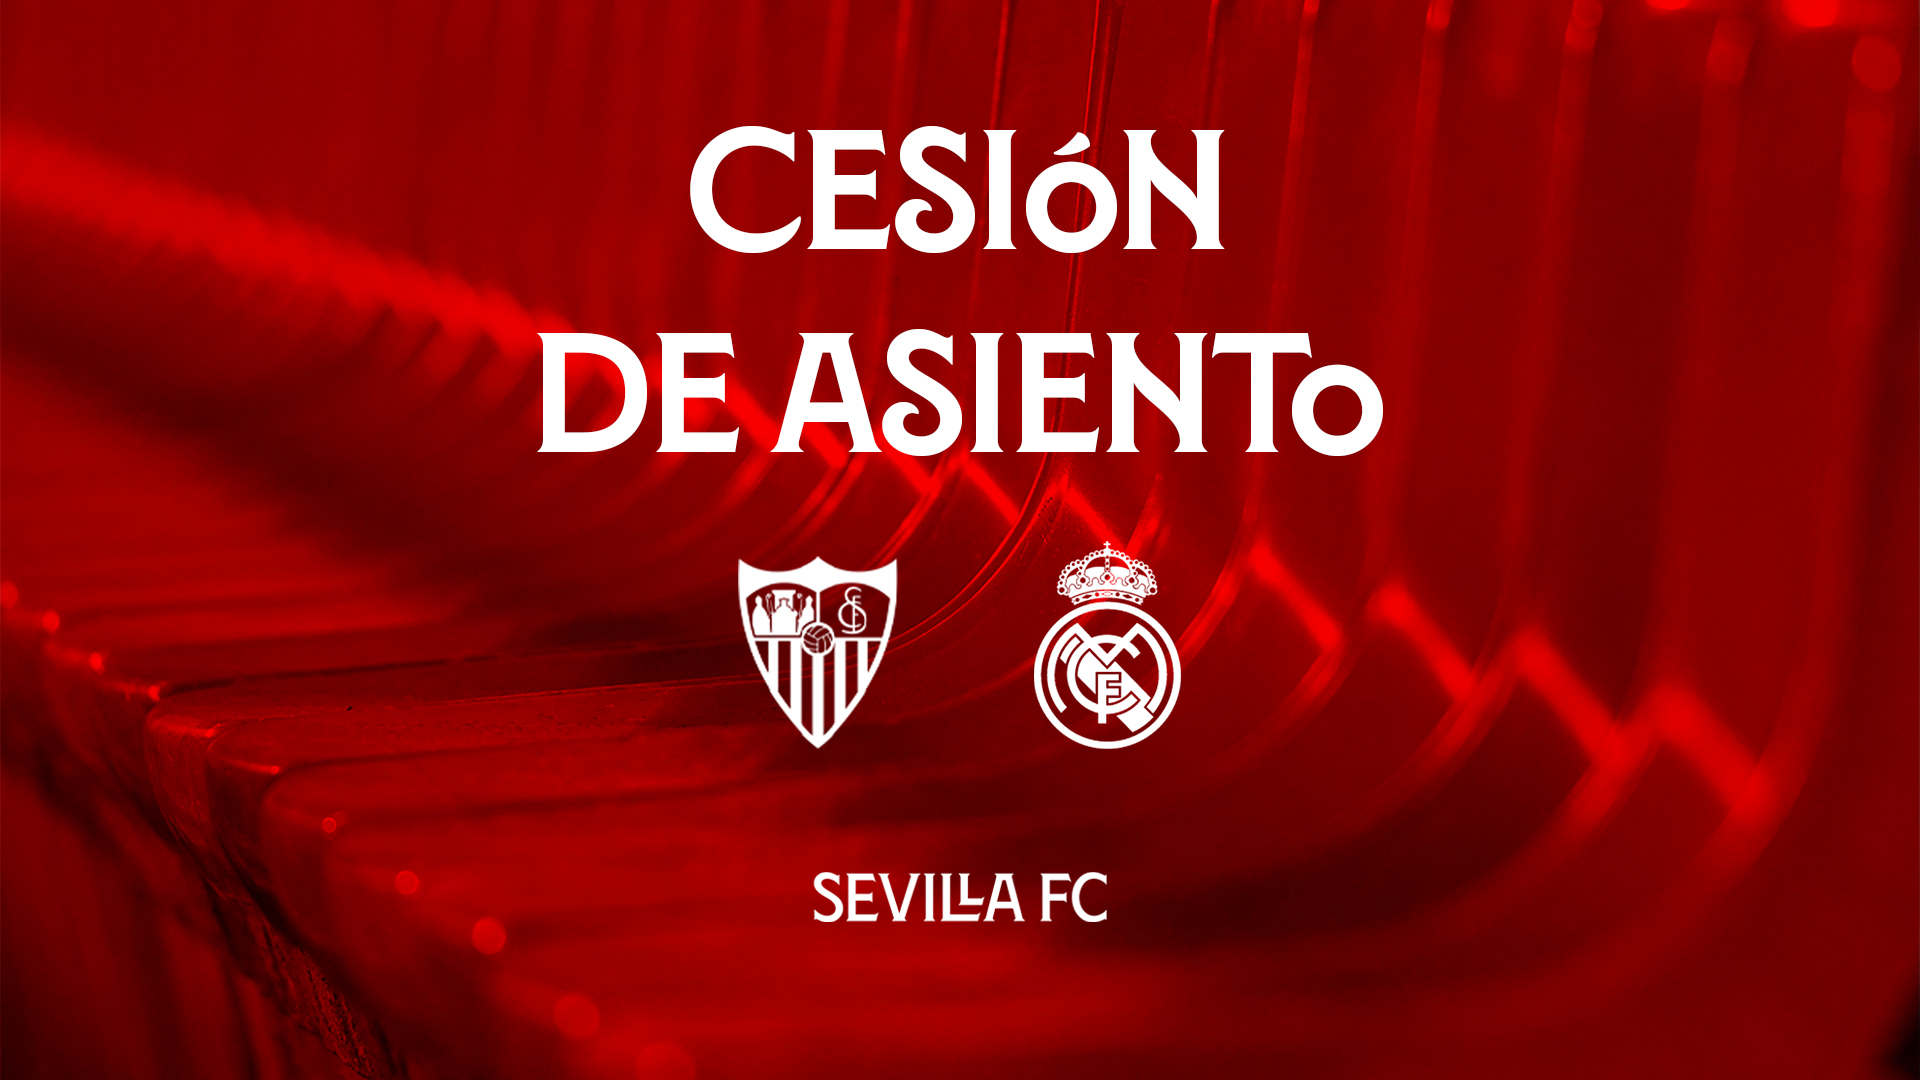 Cesión de asiento para el Sevilla FC-Real Madrid